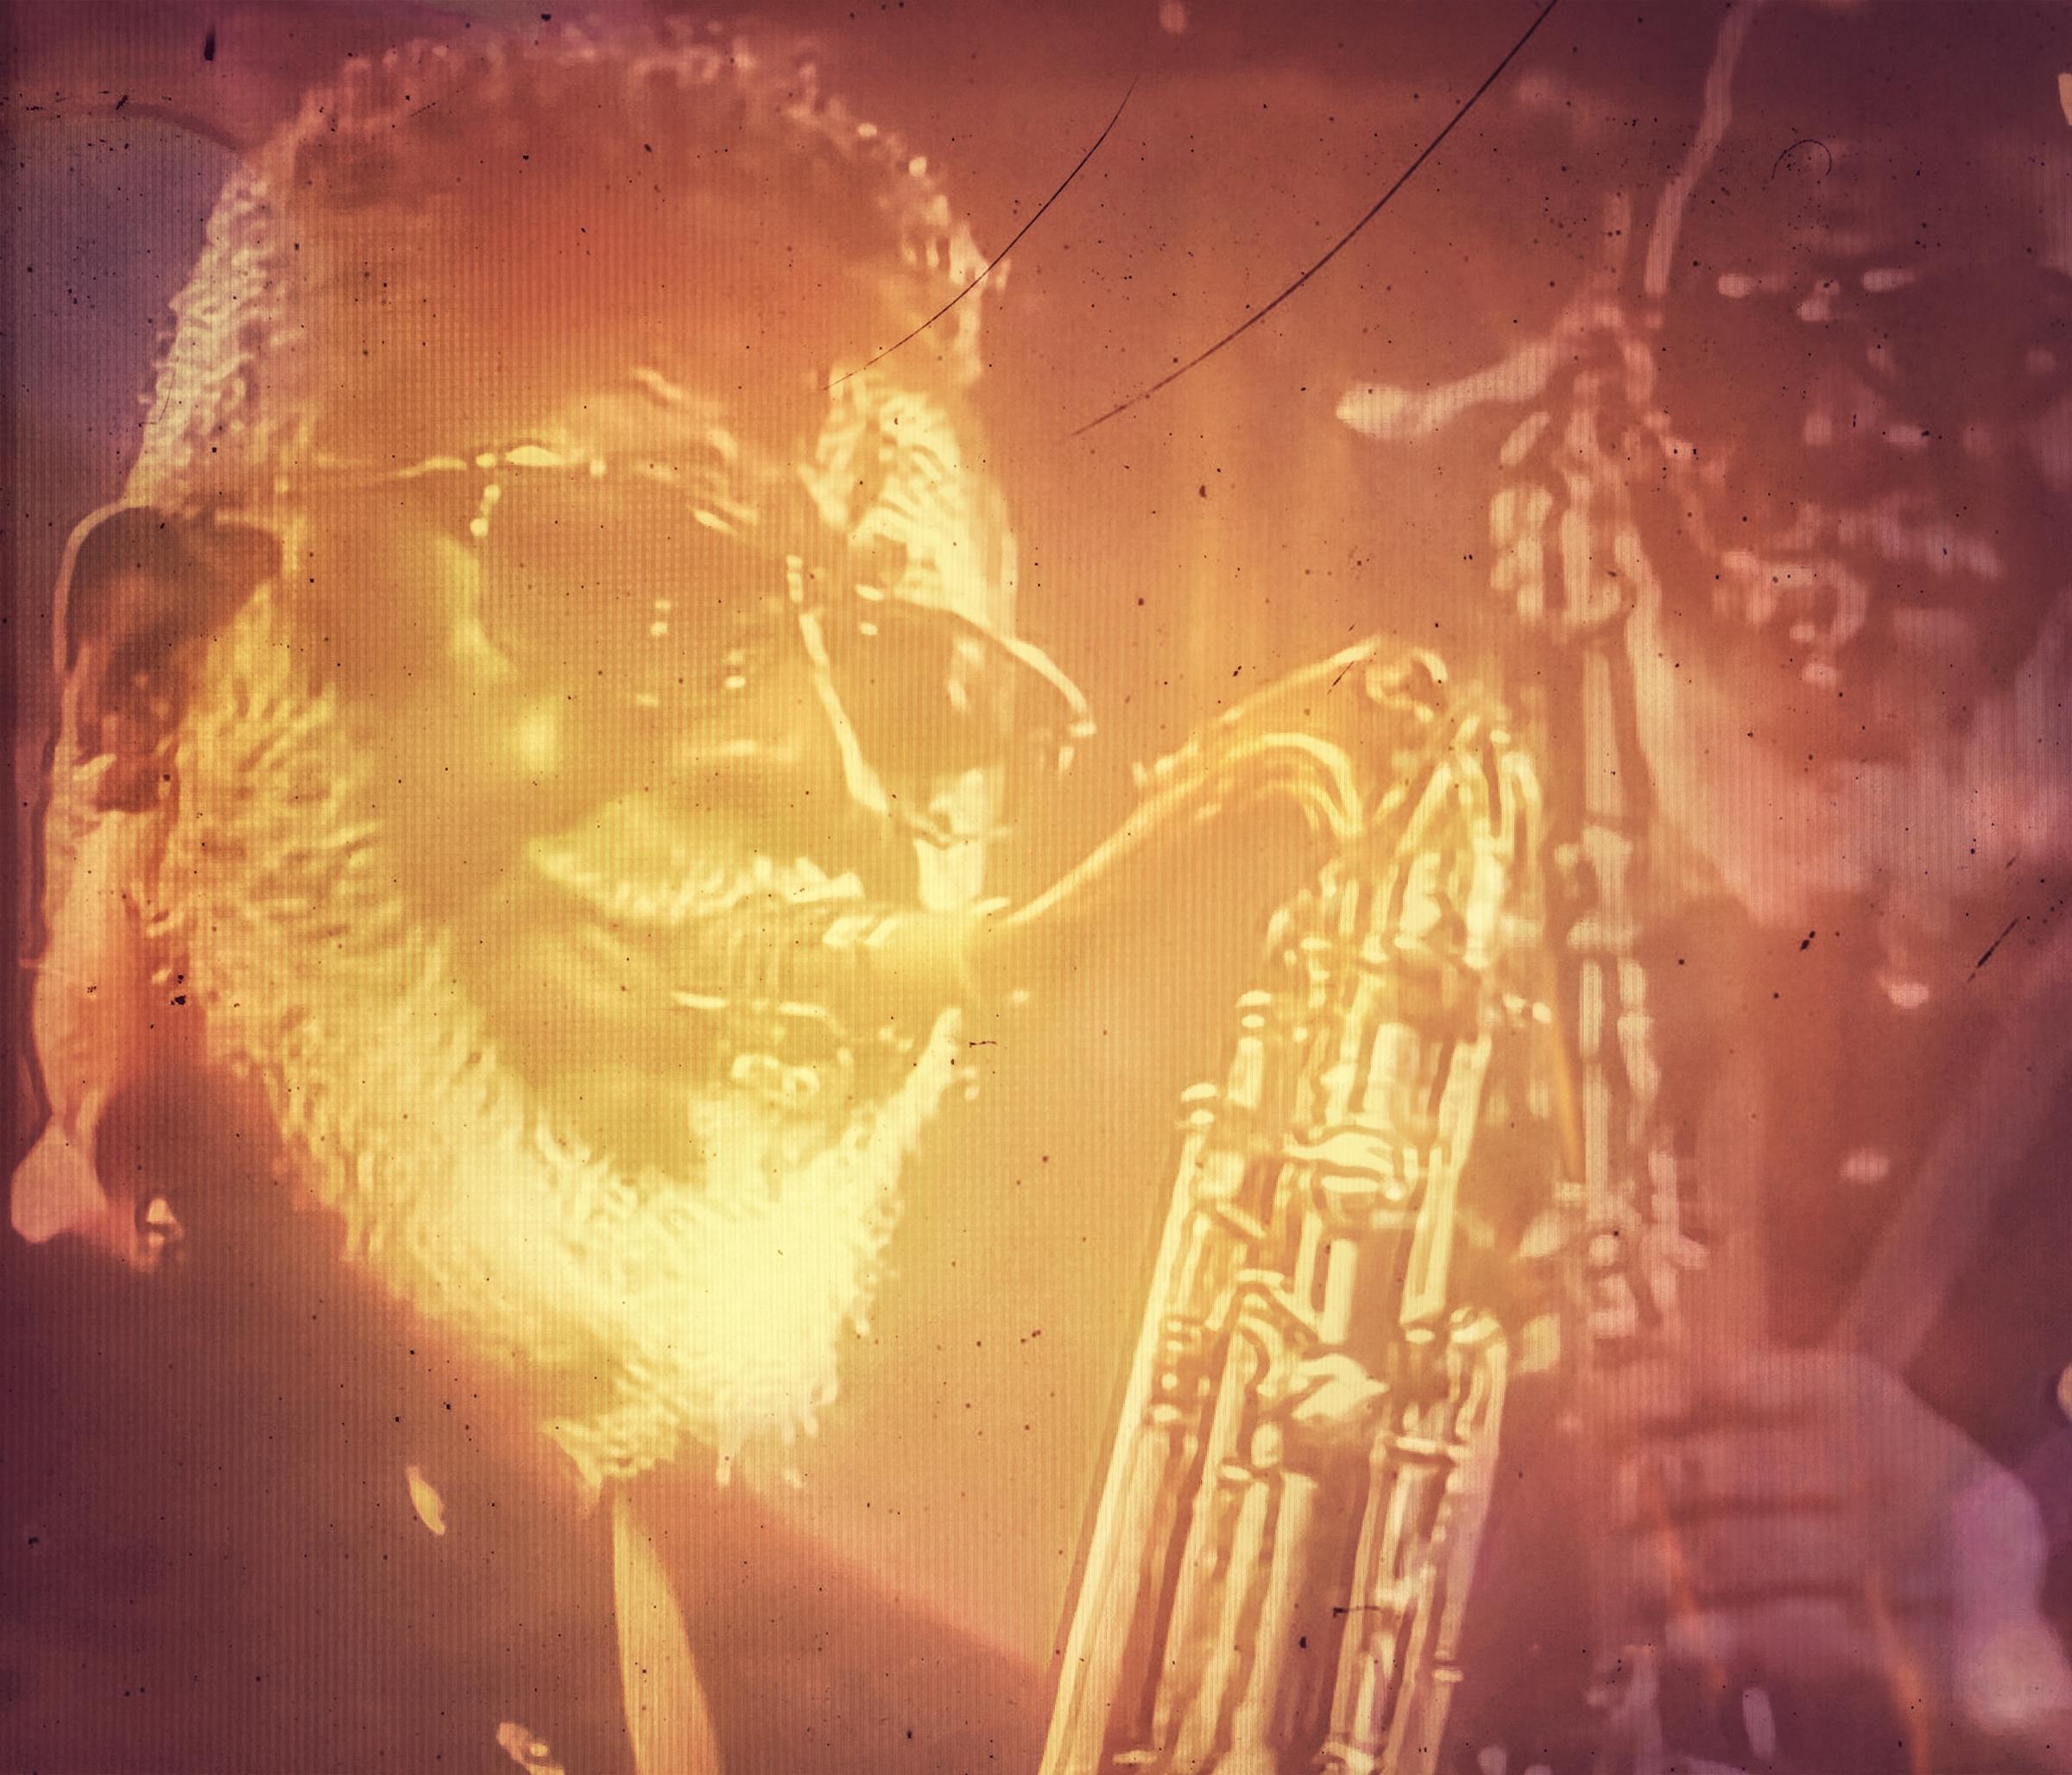 Jazz Image in the Smartphone Age - Pharoah Sanders, 1940-2022